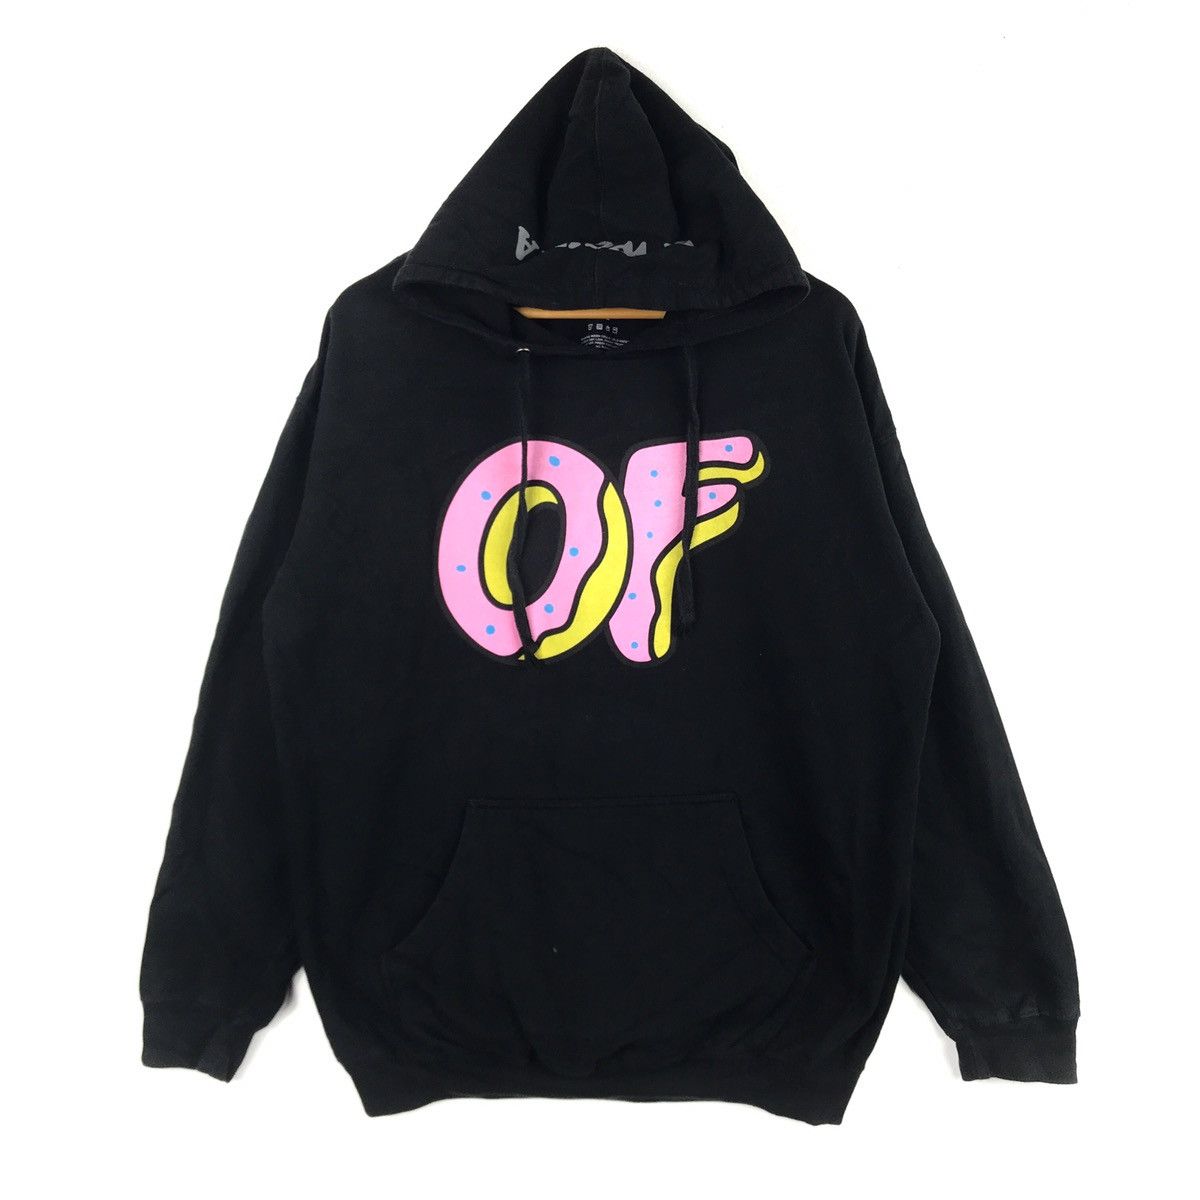 Odd Future Last Drop Odd Future Golf Wang Ofwgkta Hoodie Sweatshirt Size US XL / EU 56 / 4 - 1 Preview